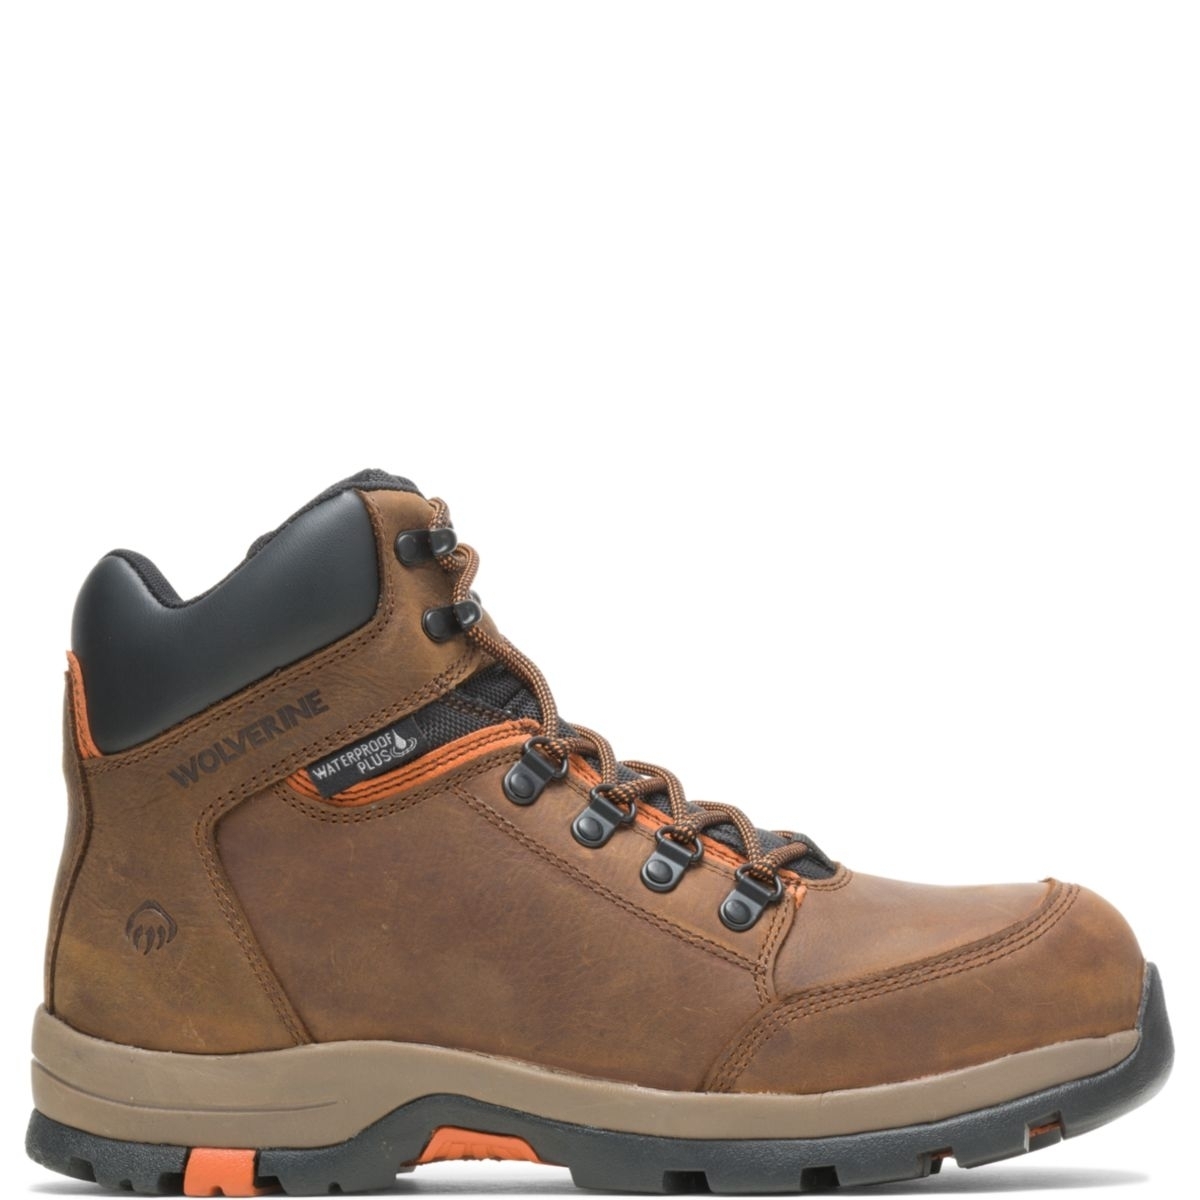 WOLVERINE Men's Grayson Steel Toe Waterproof Work Boot Brown - W211043 BROWN - BROWN, 8